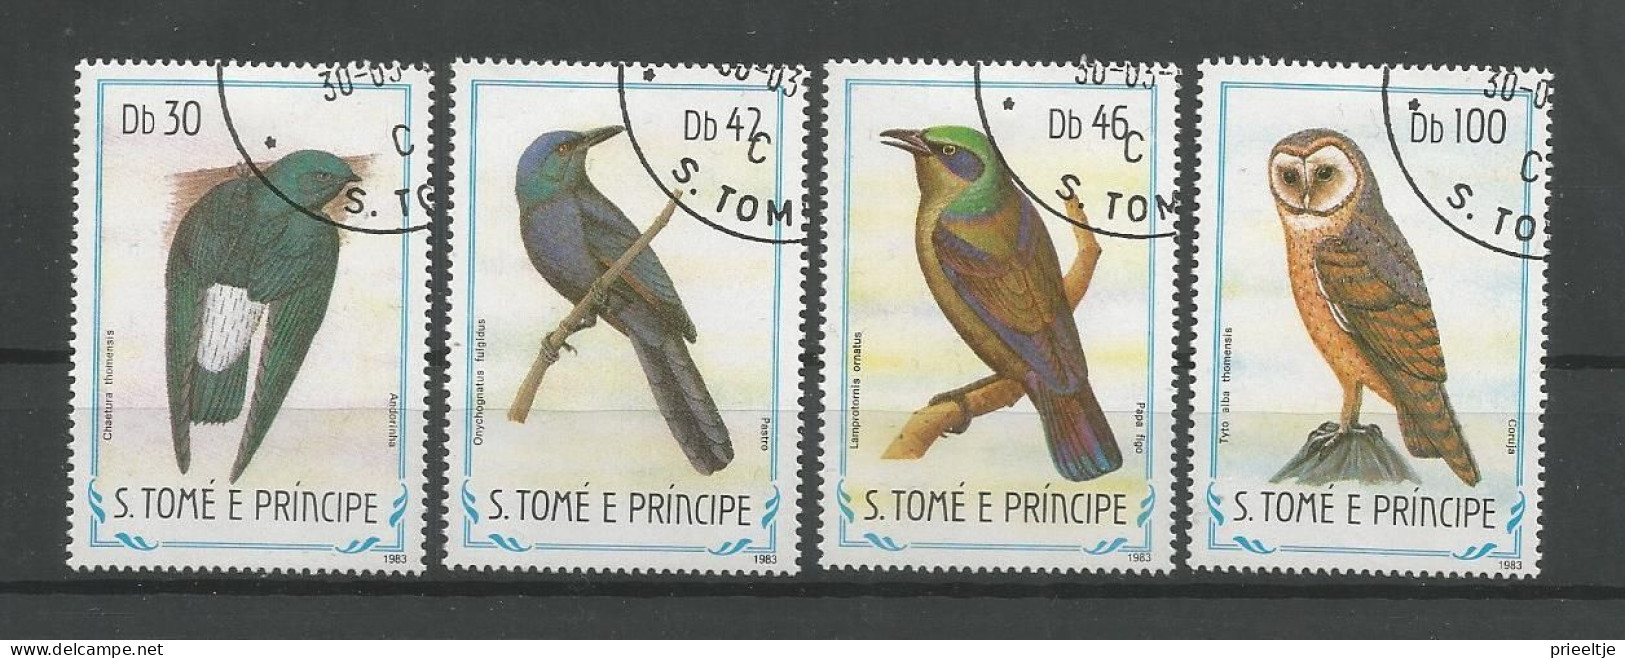 St Tome E Principe 1983 Birds Y.T. 792/795 (0) - Sao Tome Et Principe